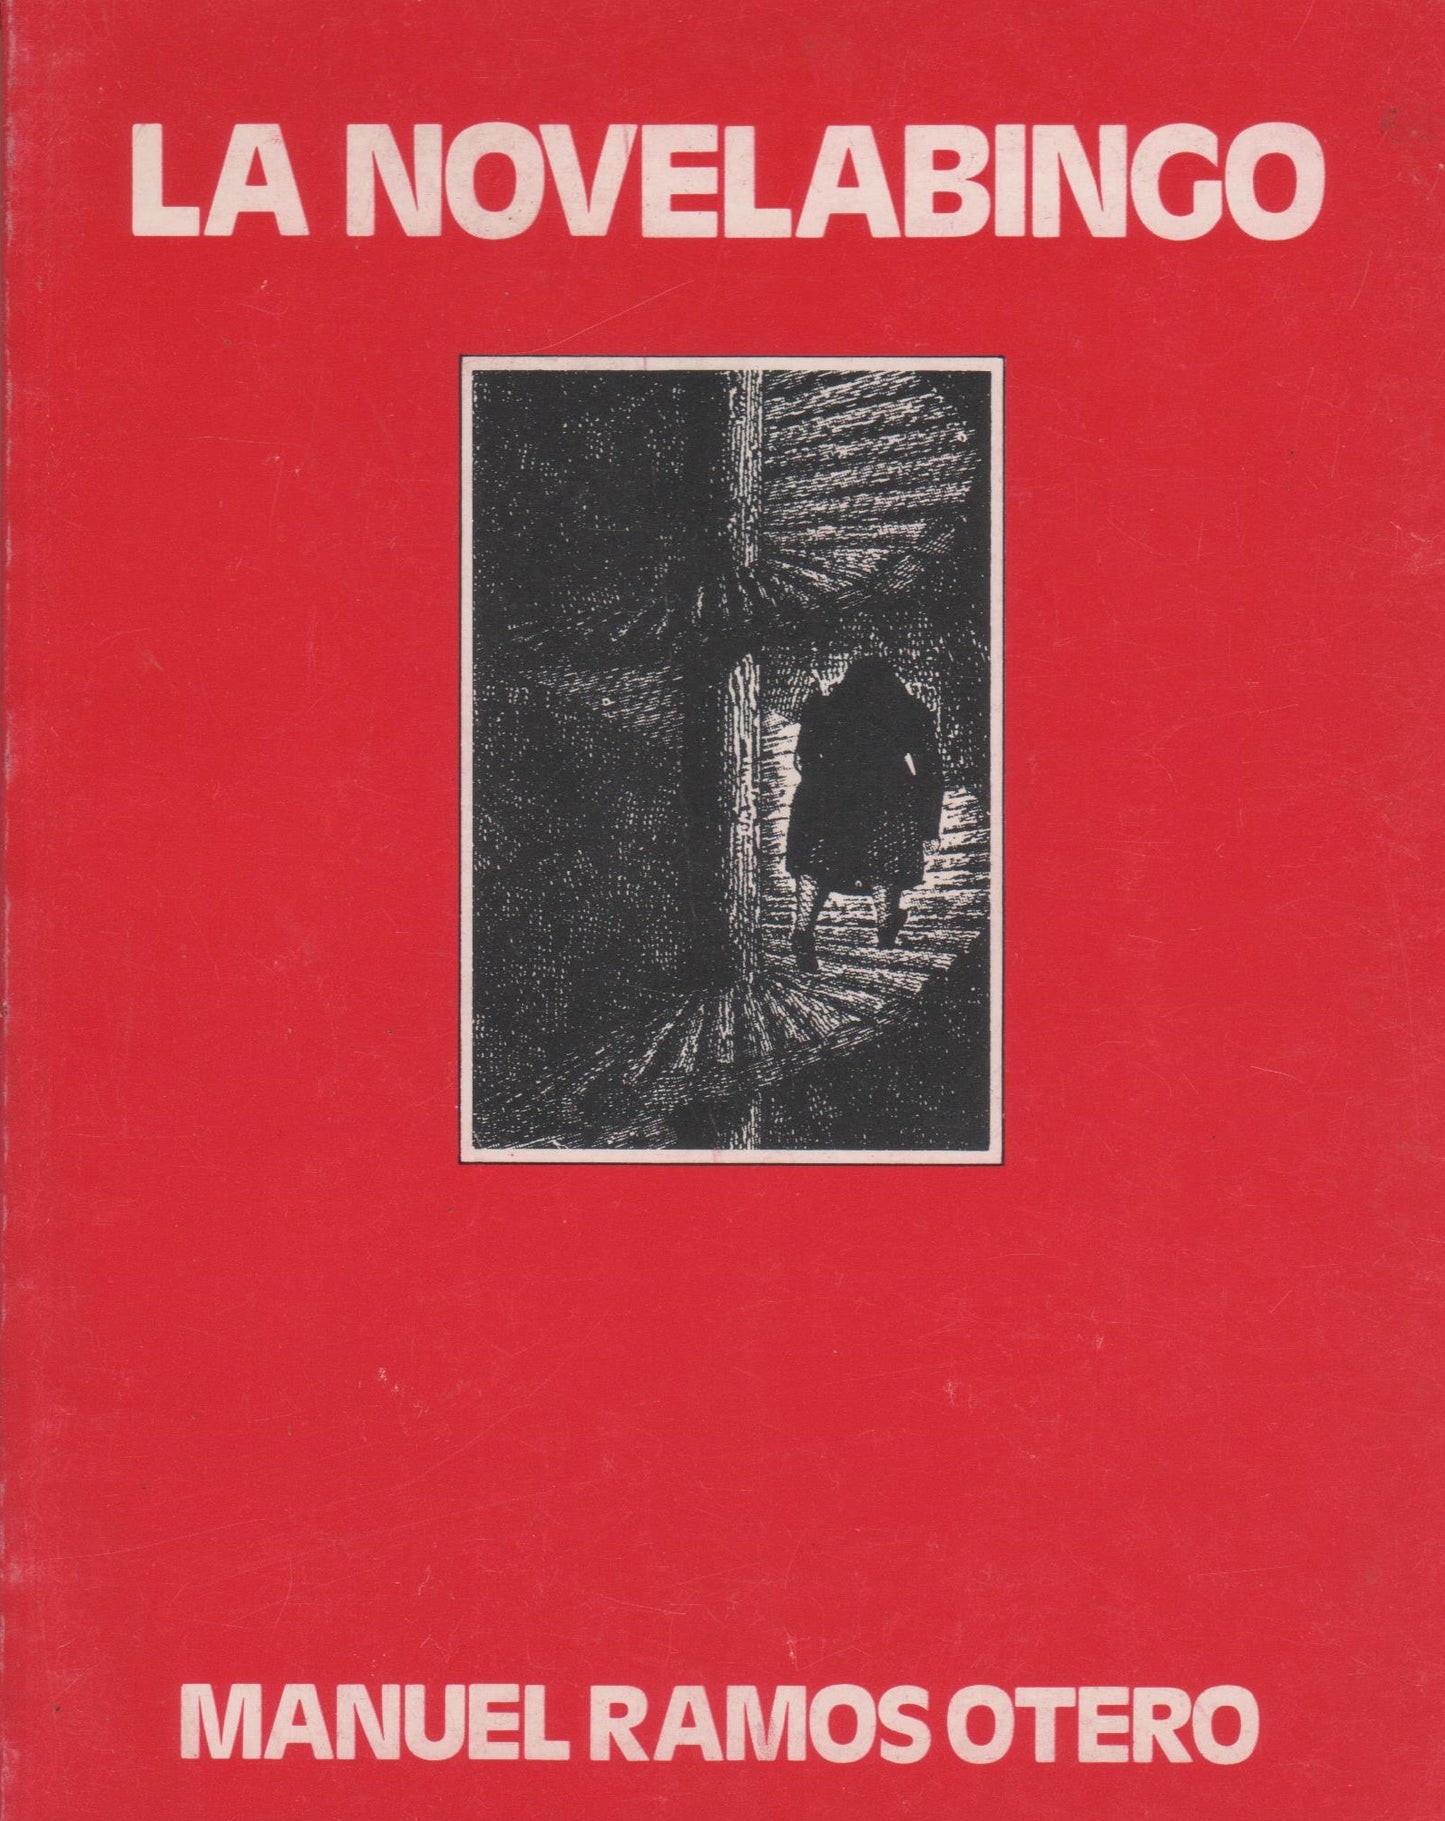 La novela bingo, Primera edición, 1976